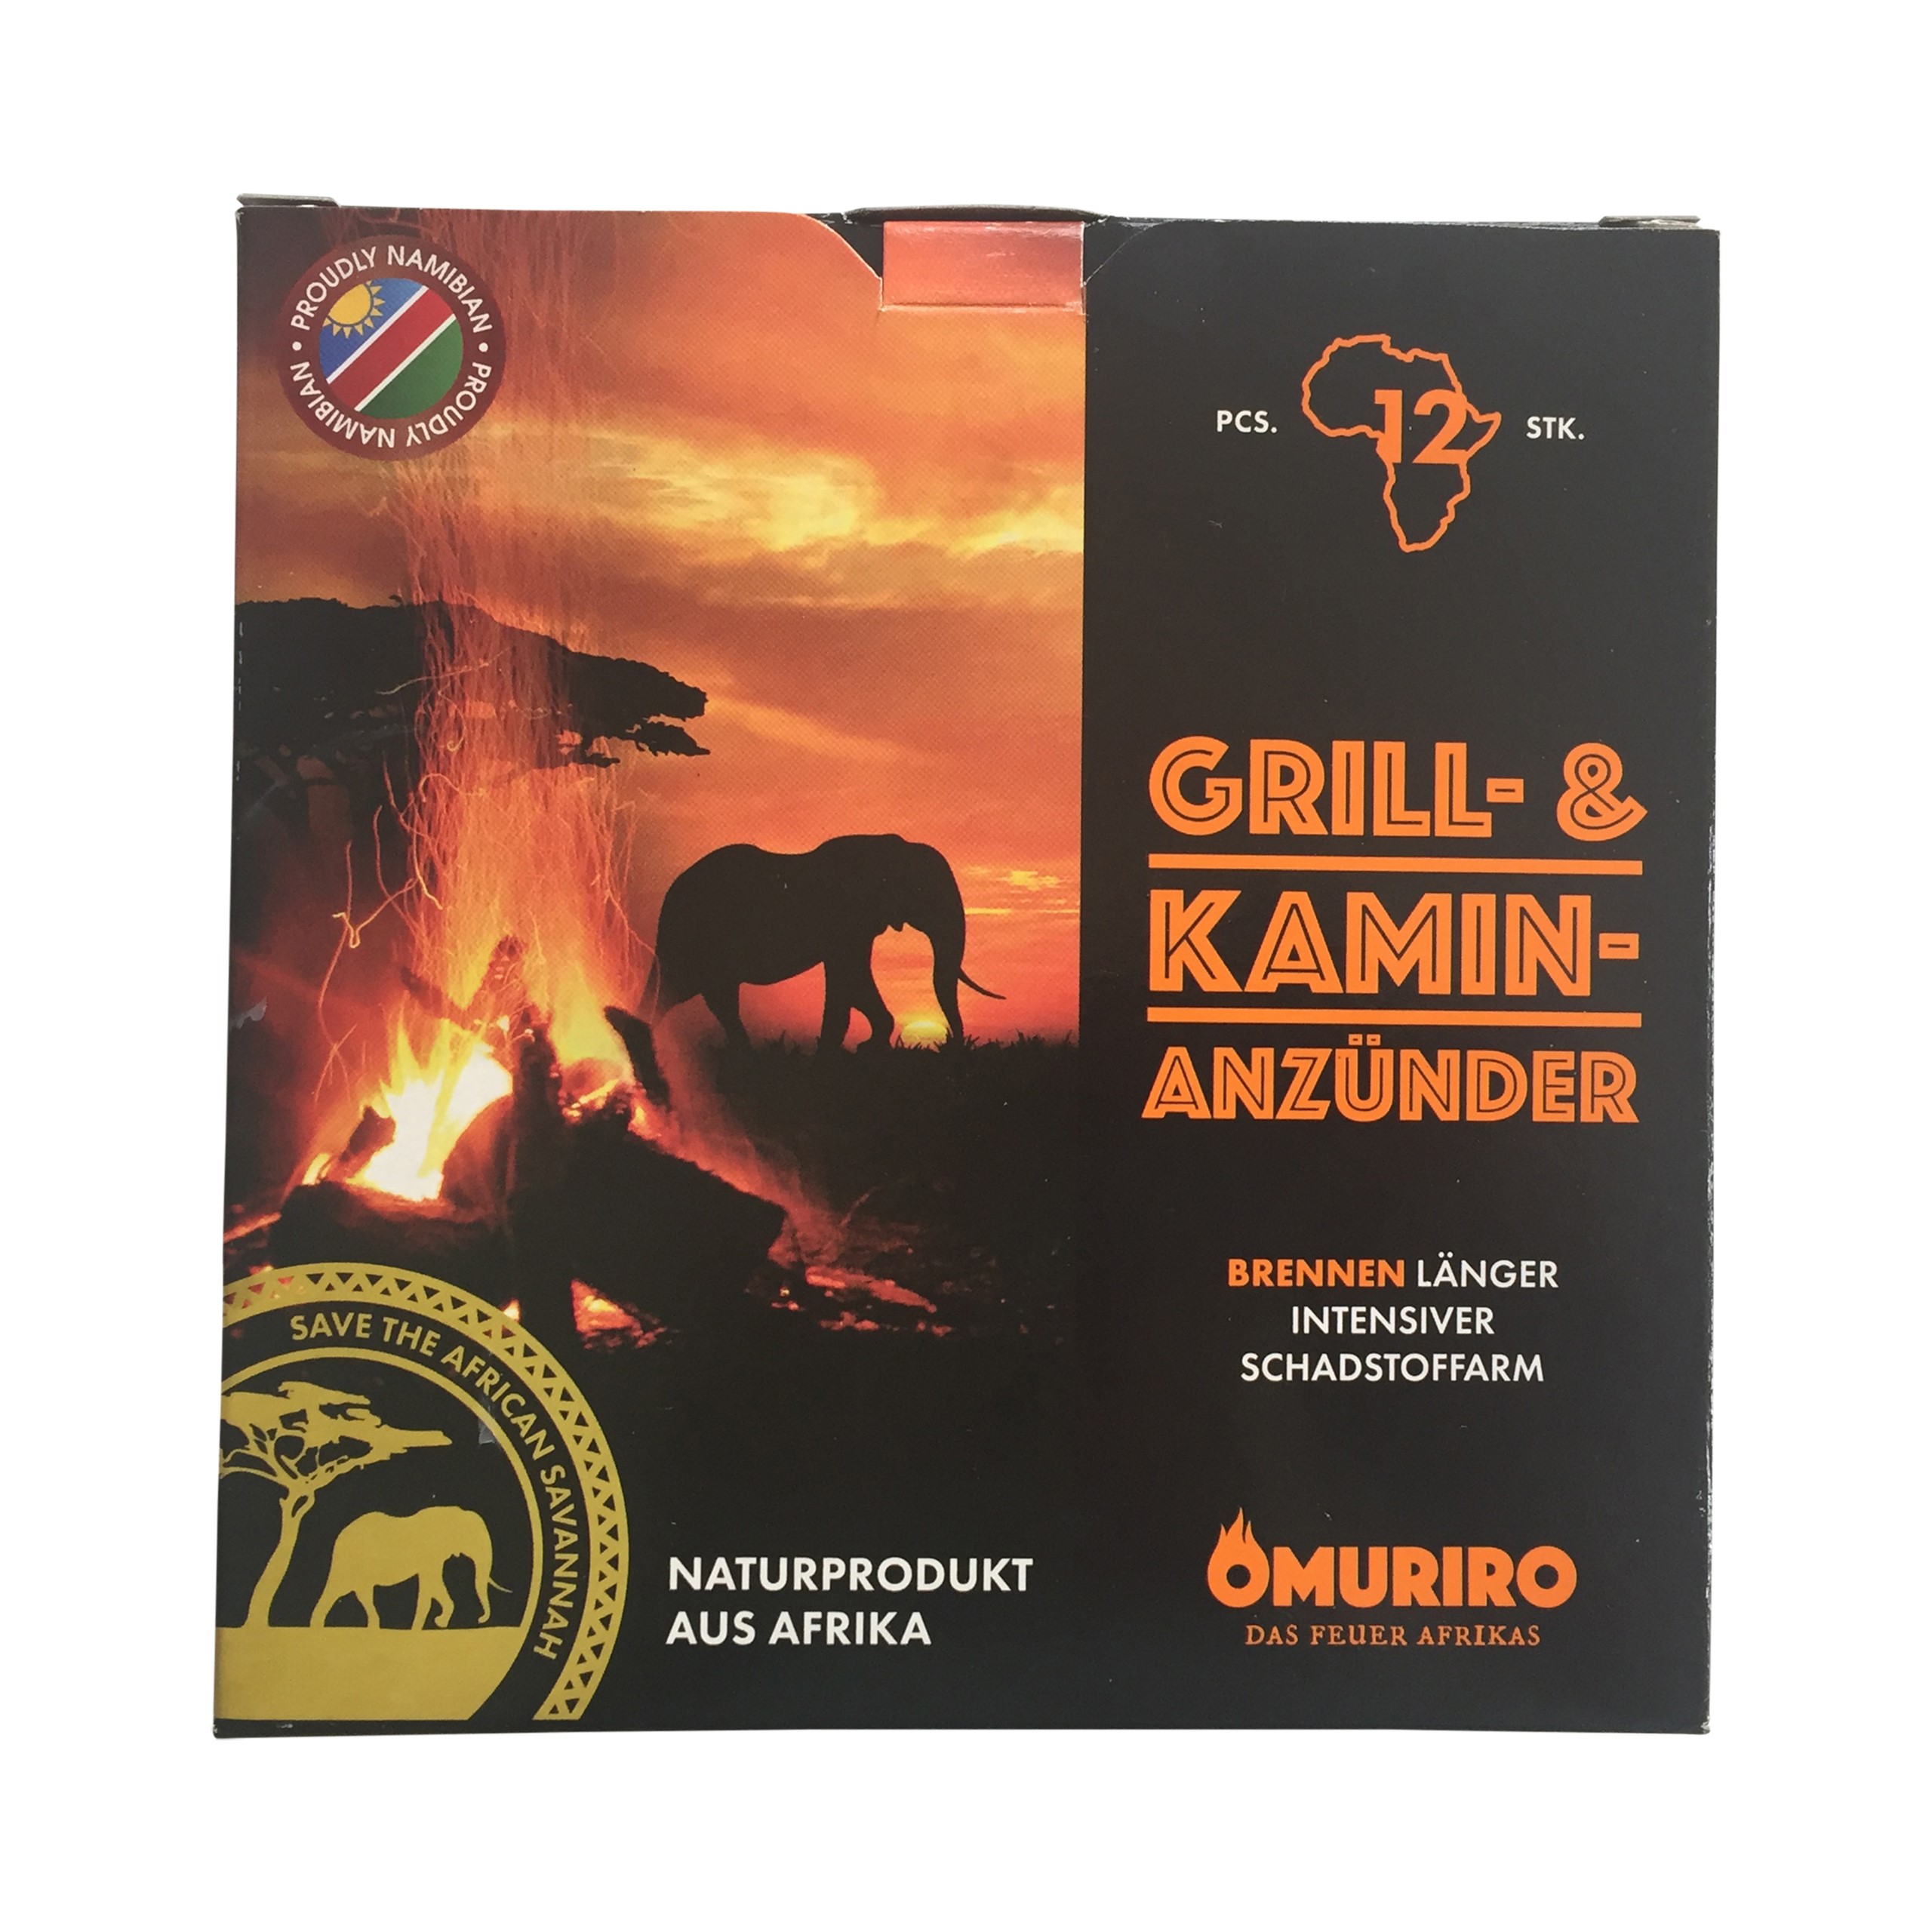 Omuriro – der nachhaltige Grill- und Kaminanzünder